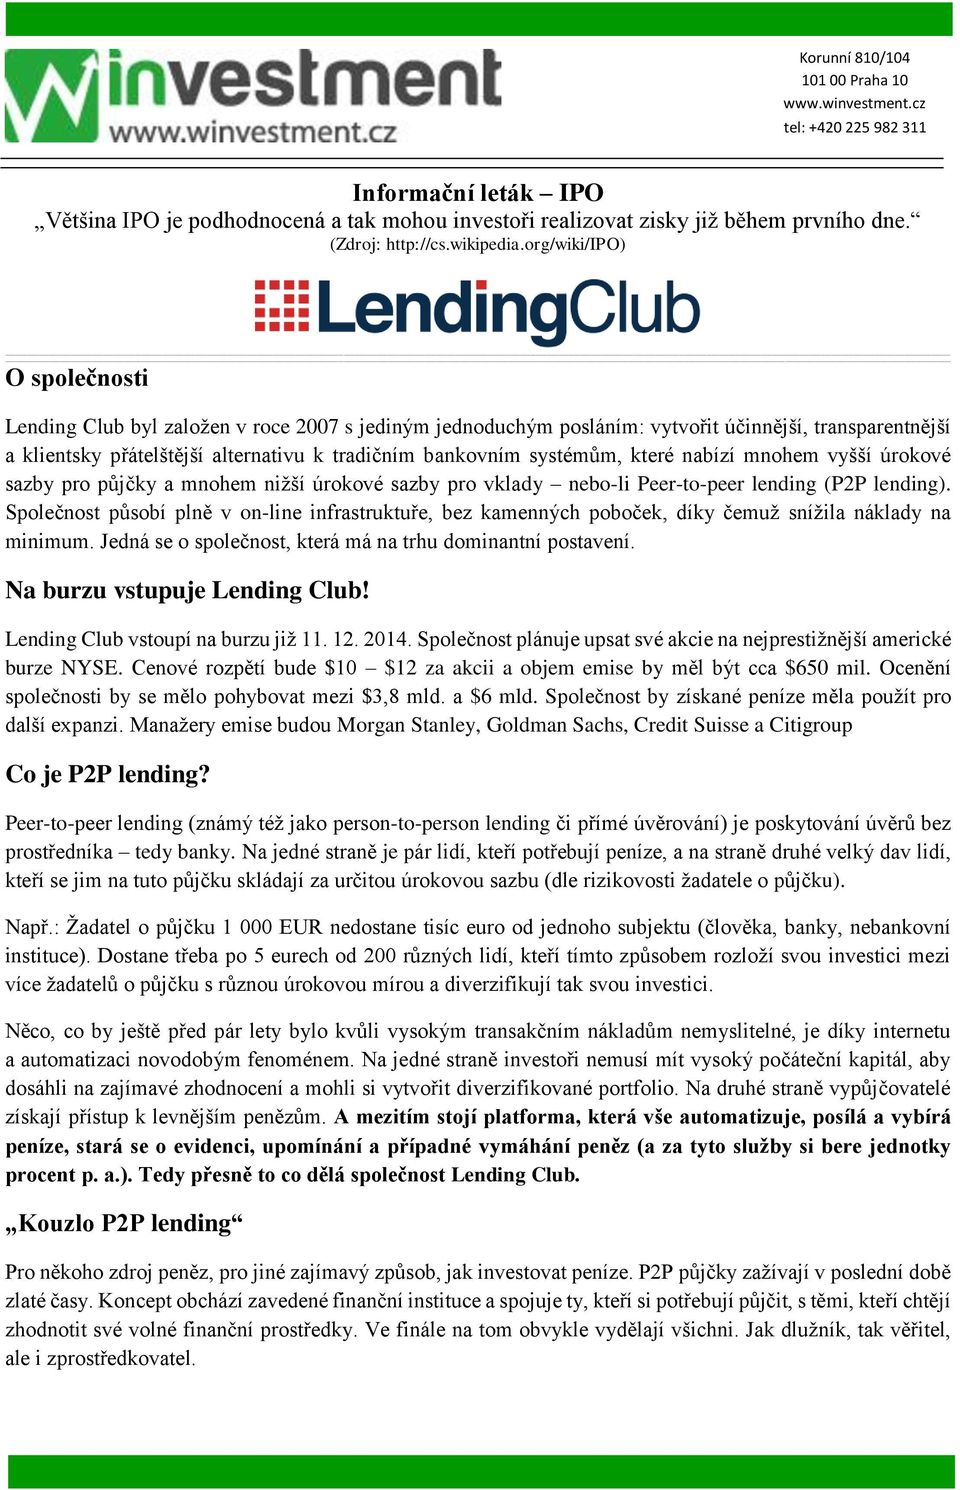 systémům, které nabízí mnohem vyšší úrokové sazby pro půjčky a mnohem nižší úrokové sazby pro vklady nebo-li Peer-to-peer lending (P2P lending).